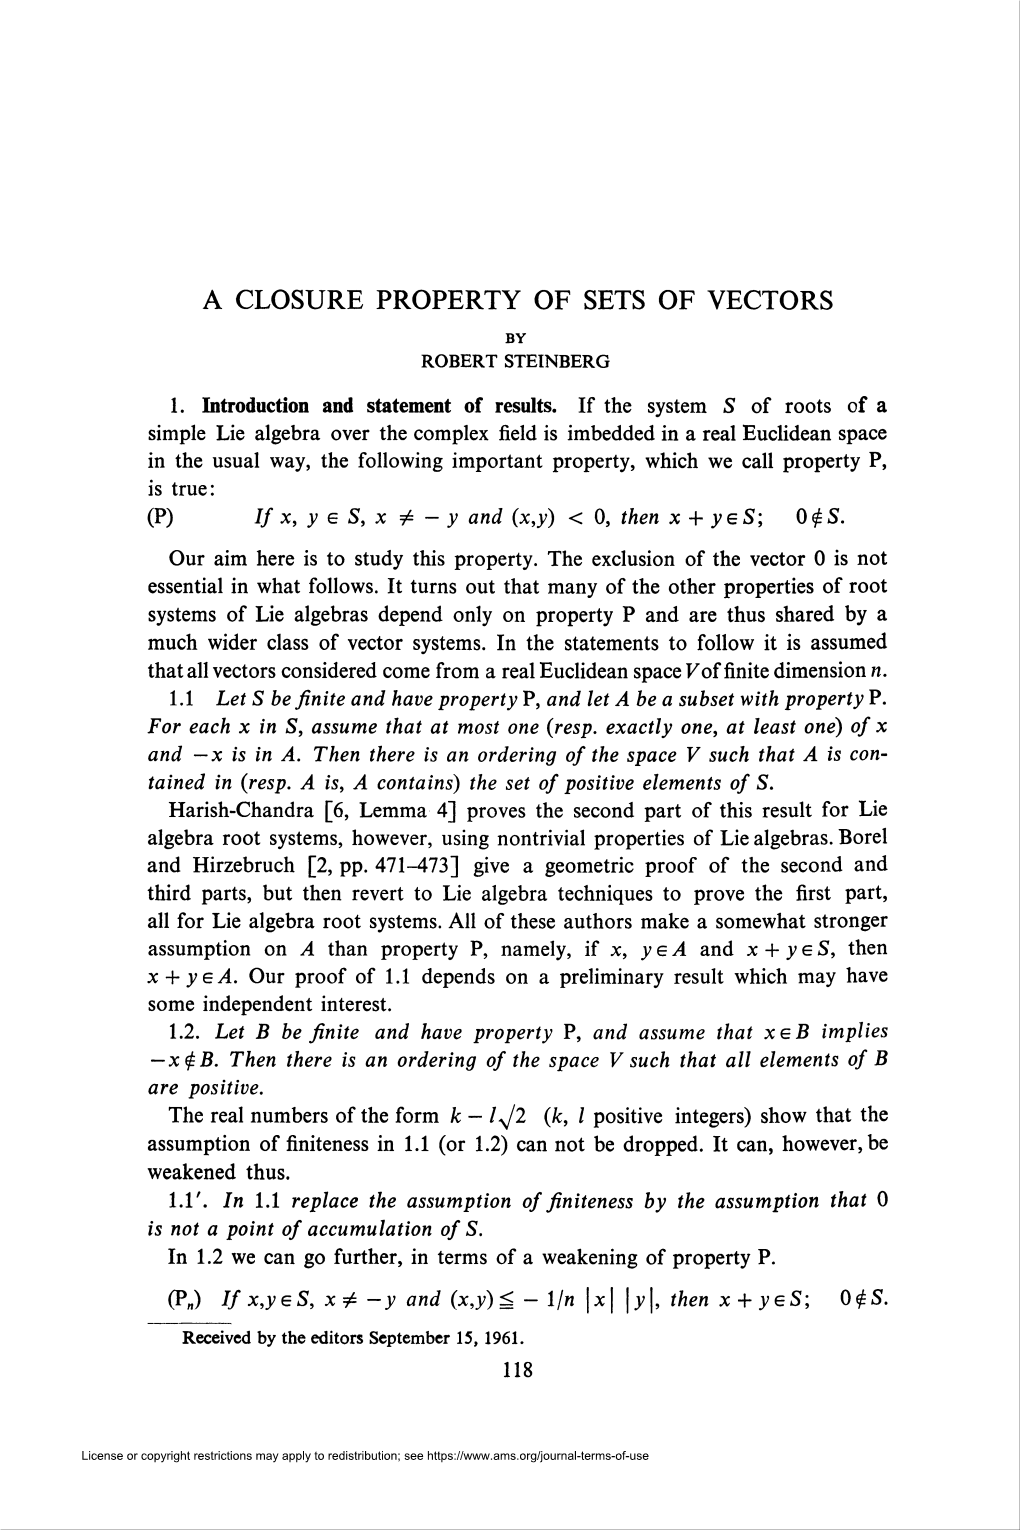 A Closure Property of Sets of Vectors